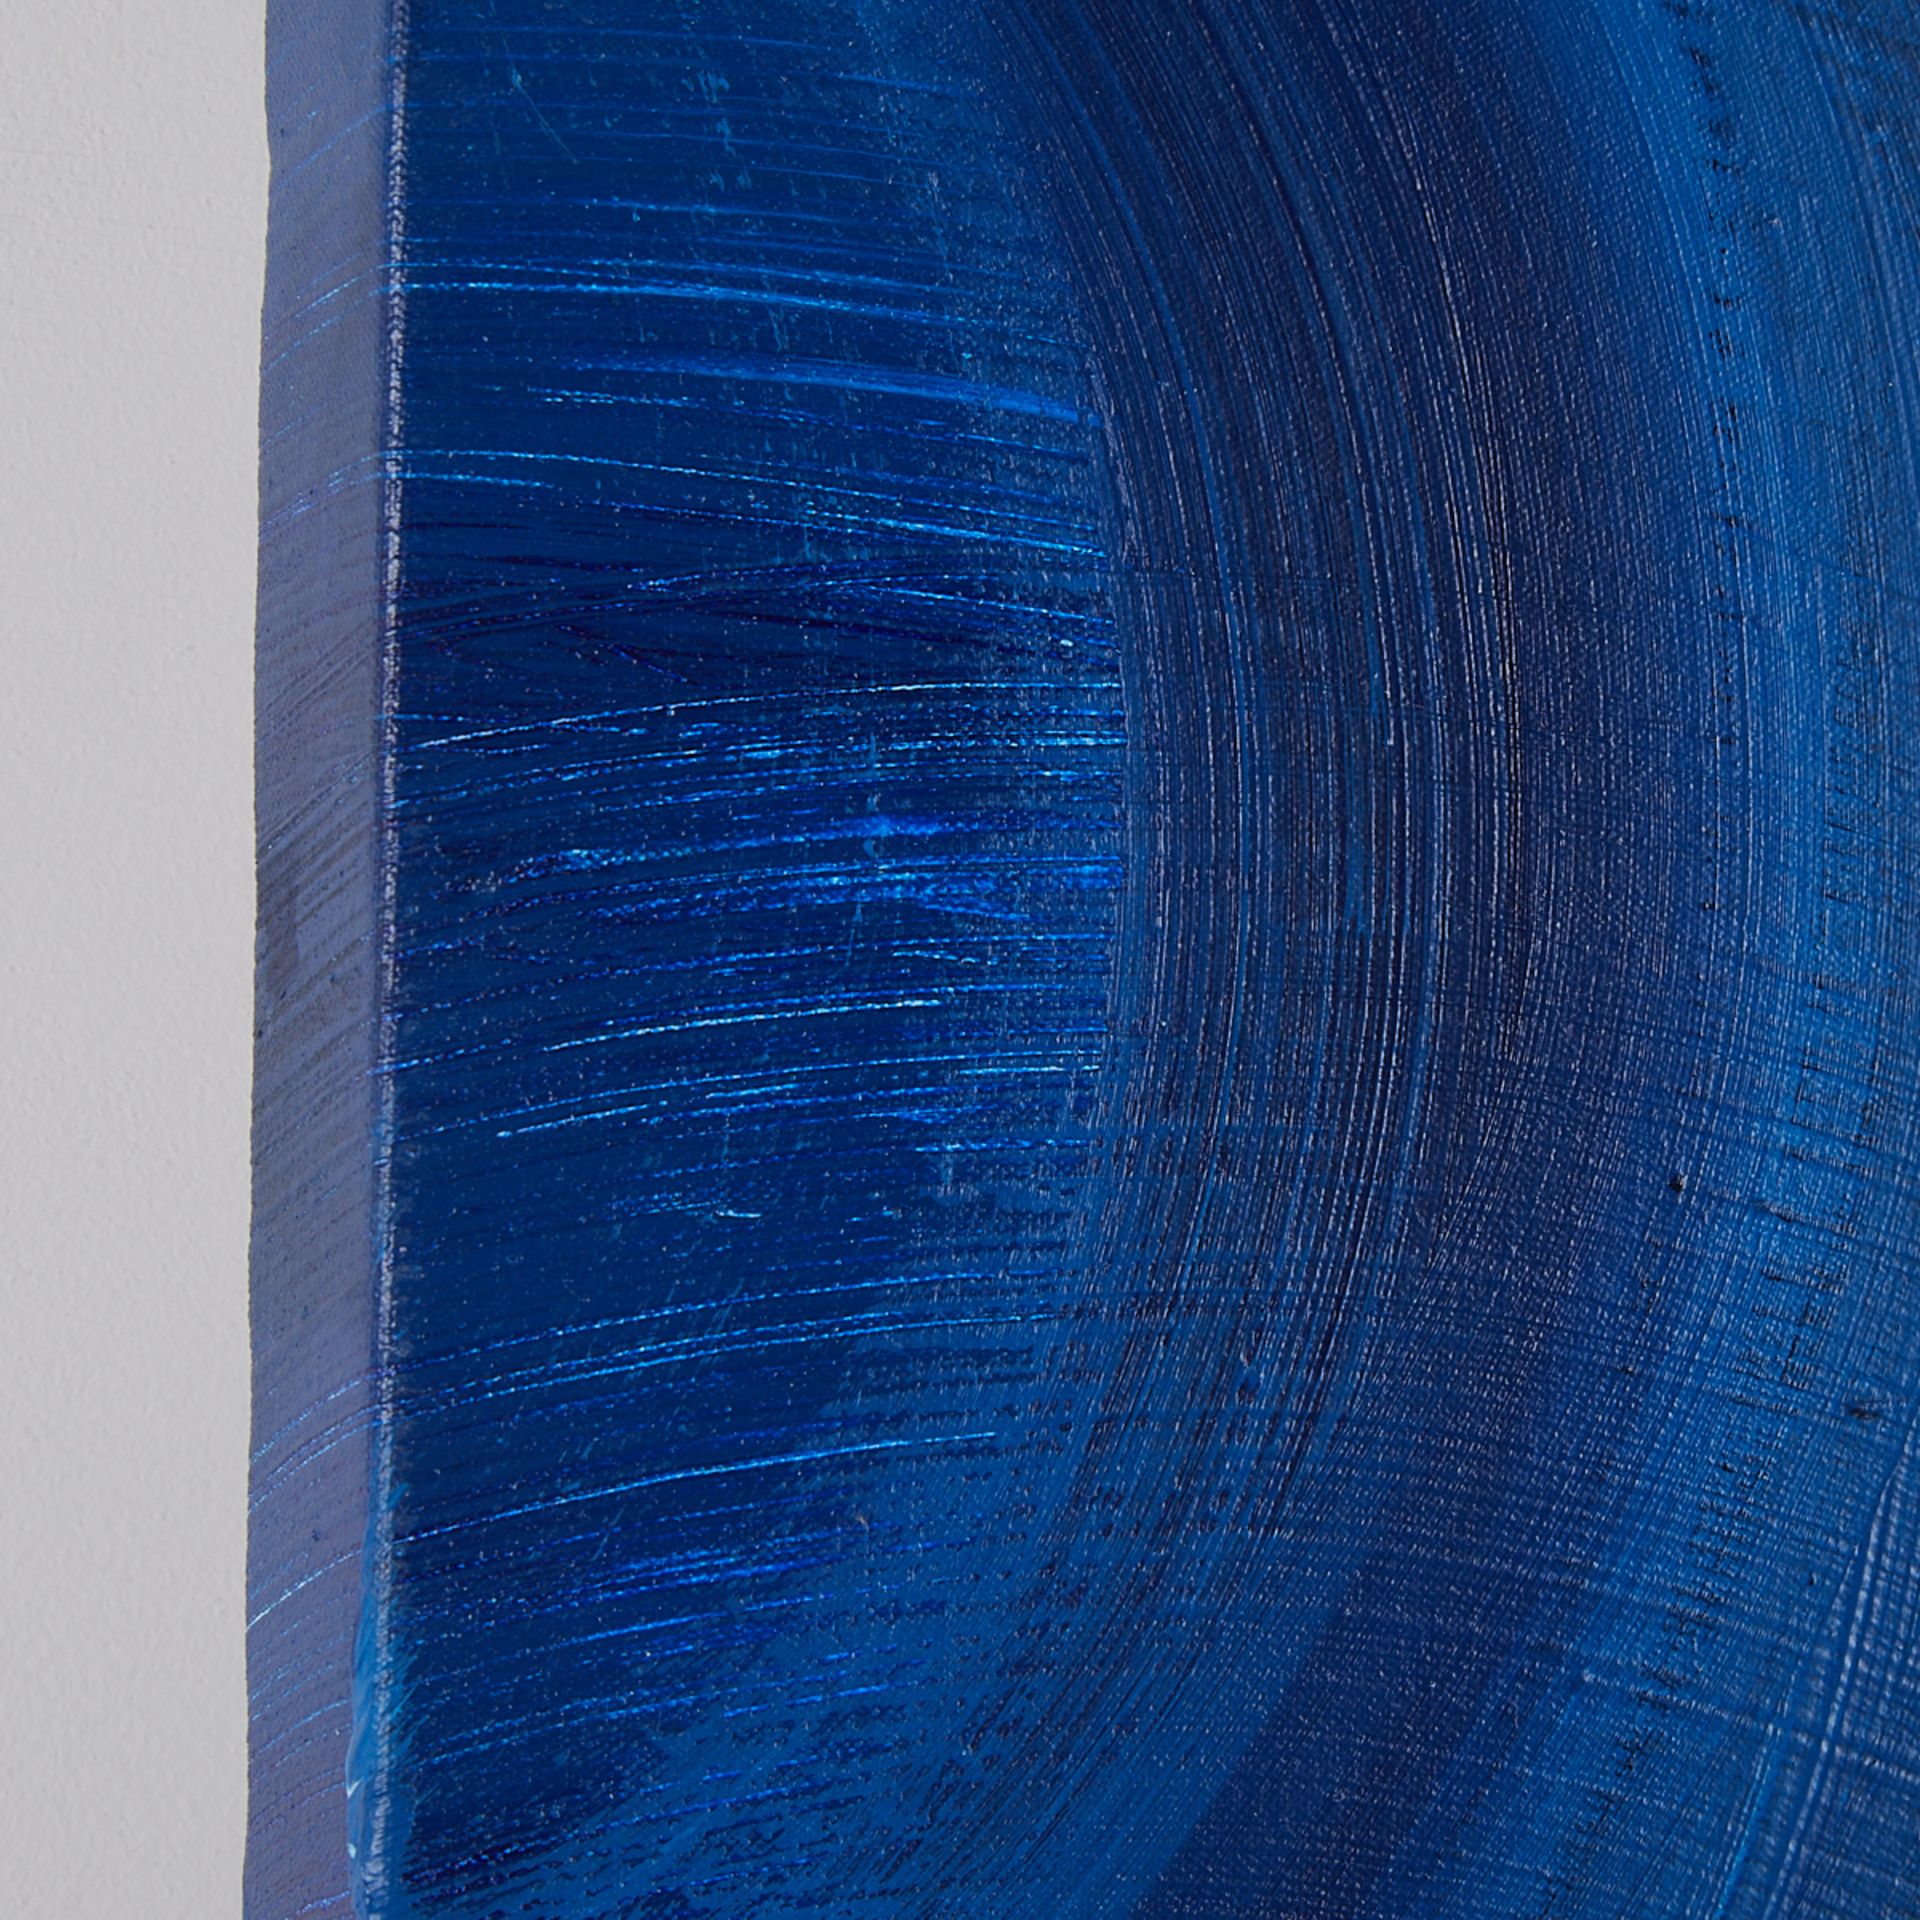 Sandi Sloane "Blue Night Wave" Mixed Media 2000 - Image 5 of 9